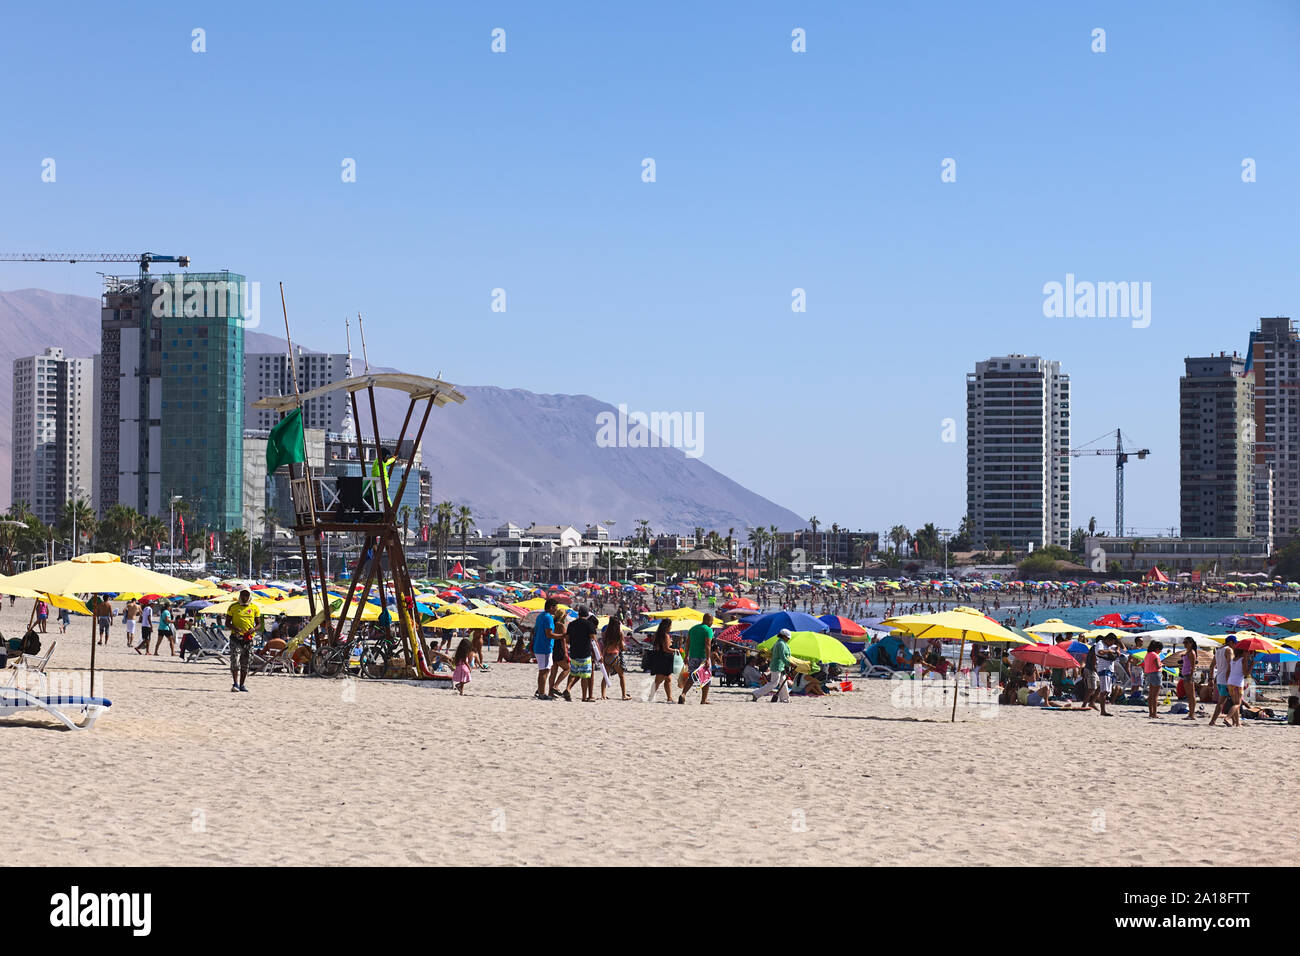 IQUIQUE, CHILI - 23 janvier 2015 : tour de sauveteur, de parasols et de nombreux visiteurs sur Cavancha Beach le 23 janvier 2015 à Iquique, Chili Banque D'Images